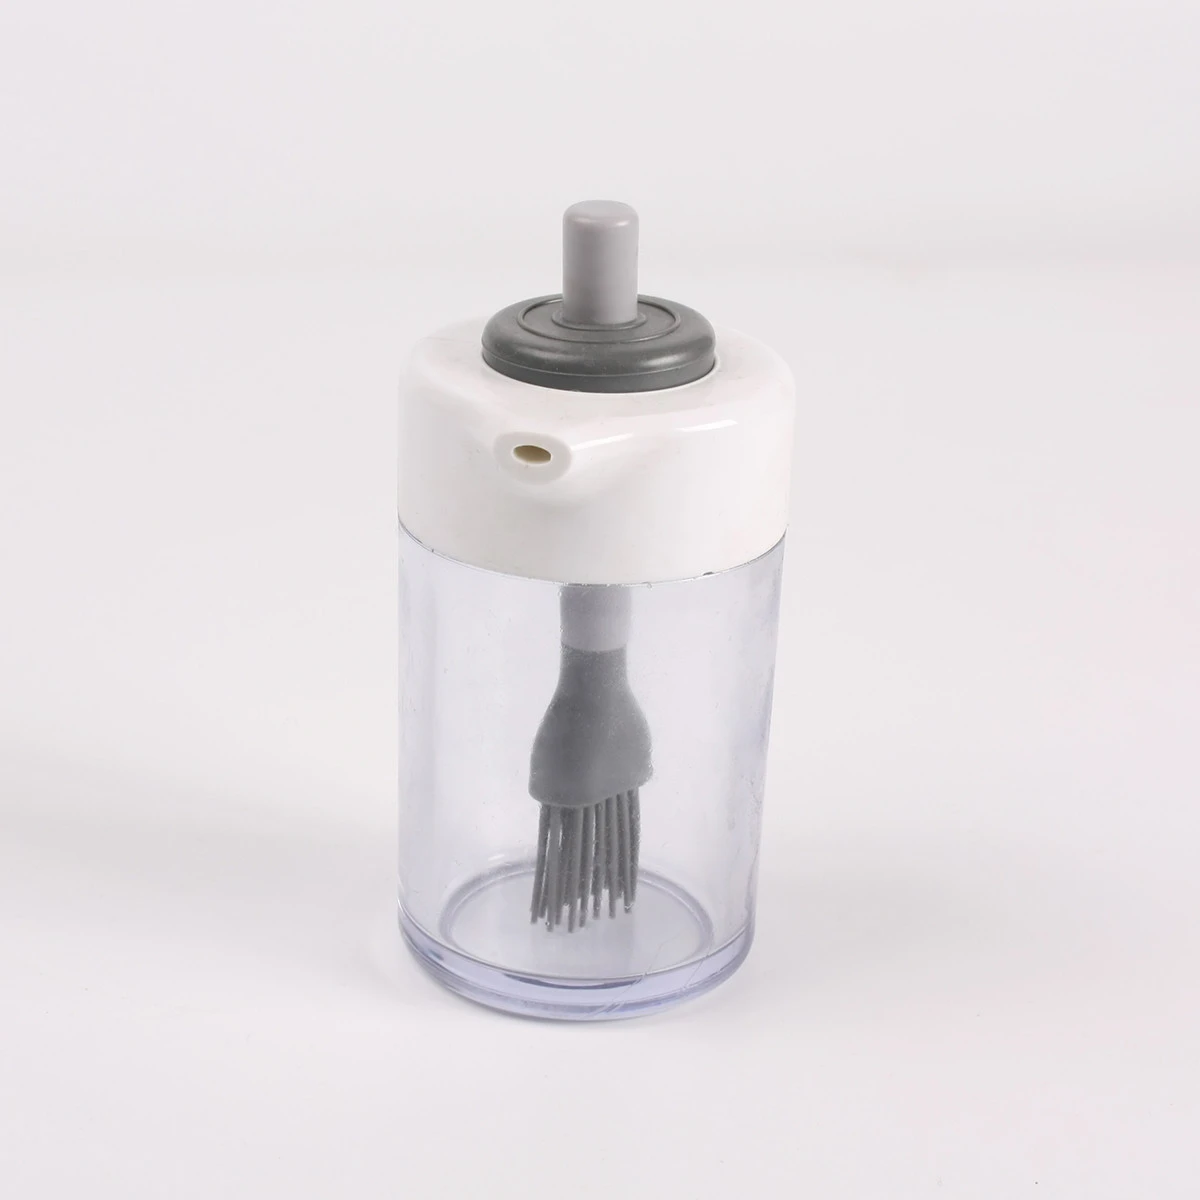 KH Direct Factory Price essential oil vinegar dispenser,plastic kitchen oil dispenser bottle for better life